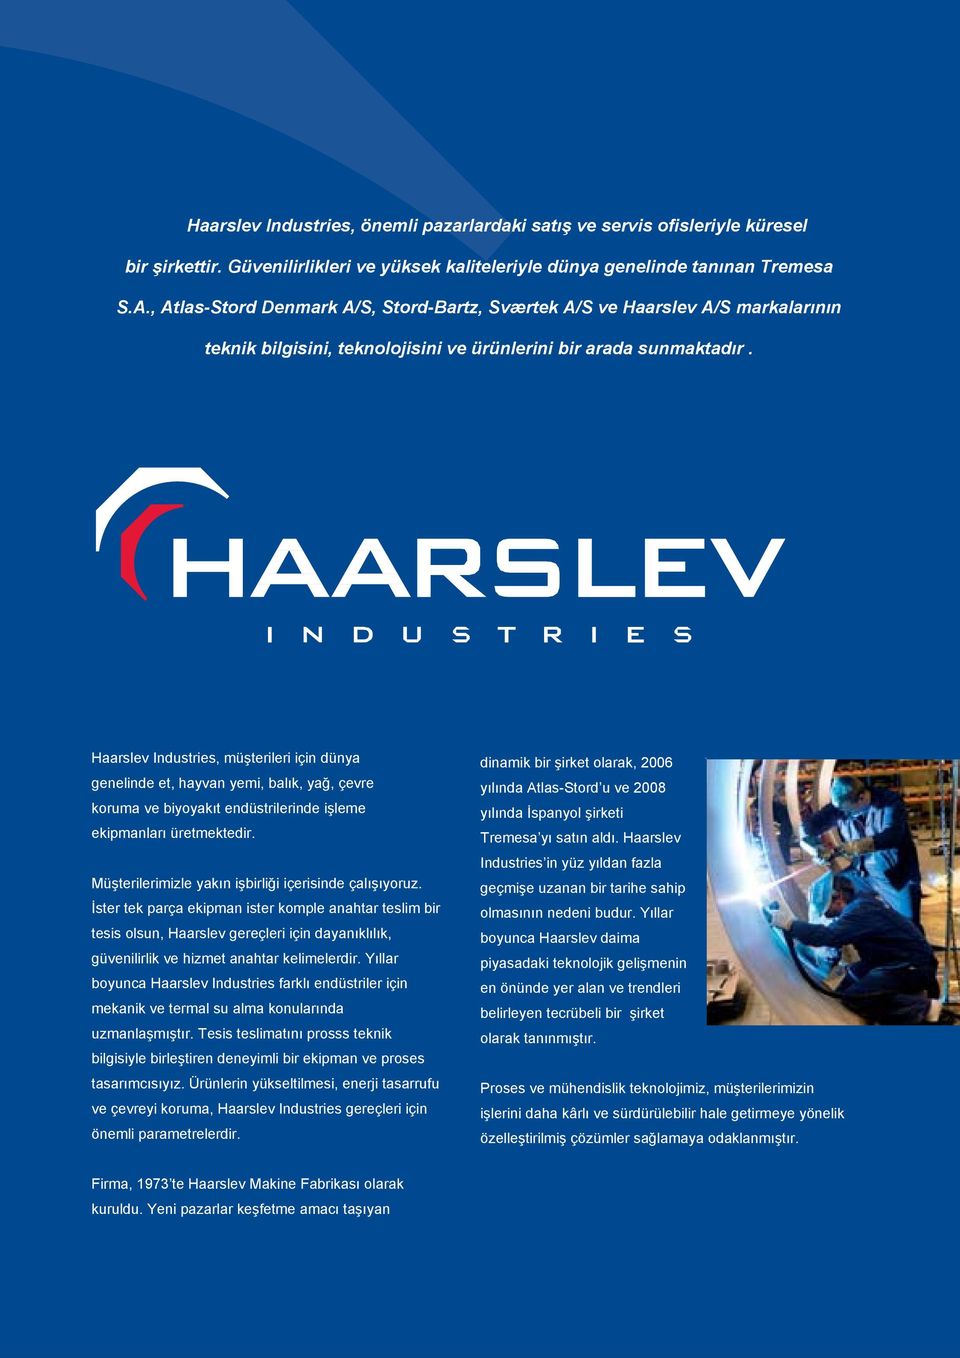 Haarslev Industries, müşterileri için dünya genelinde et, hayvan yemi, balık, yağ, çevre koruma ve biyoyakıt endüstrilerinde işleme ekipmanları üretmektedir.